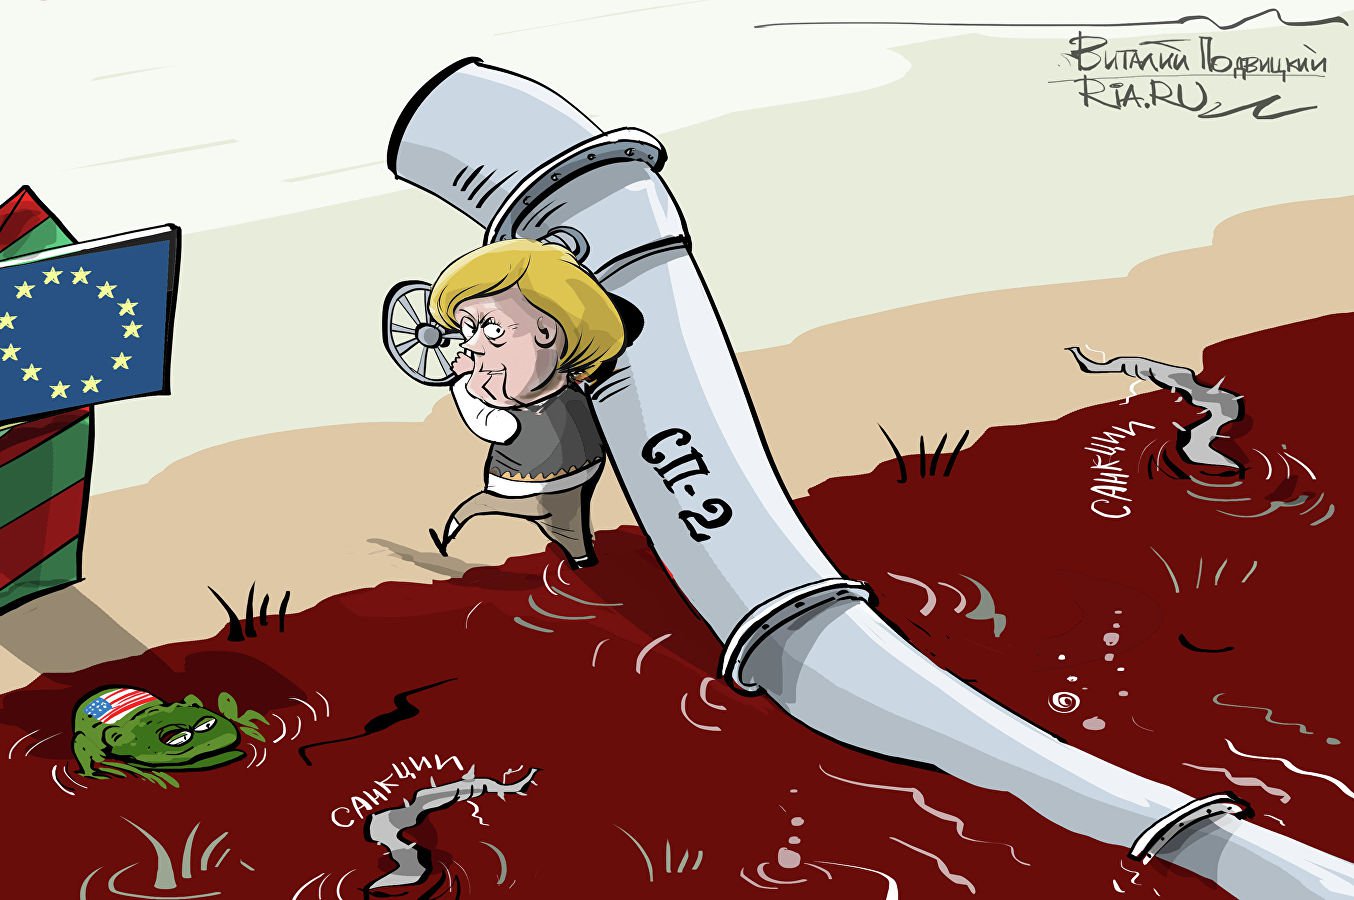 Карикатура "Зная брод, тащи газопровод", Виталий Подвицкий